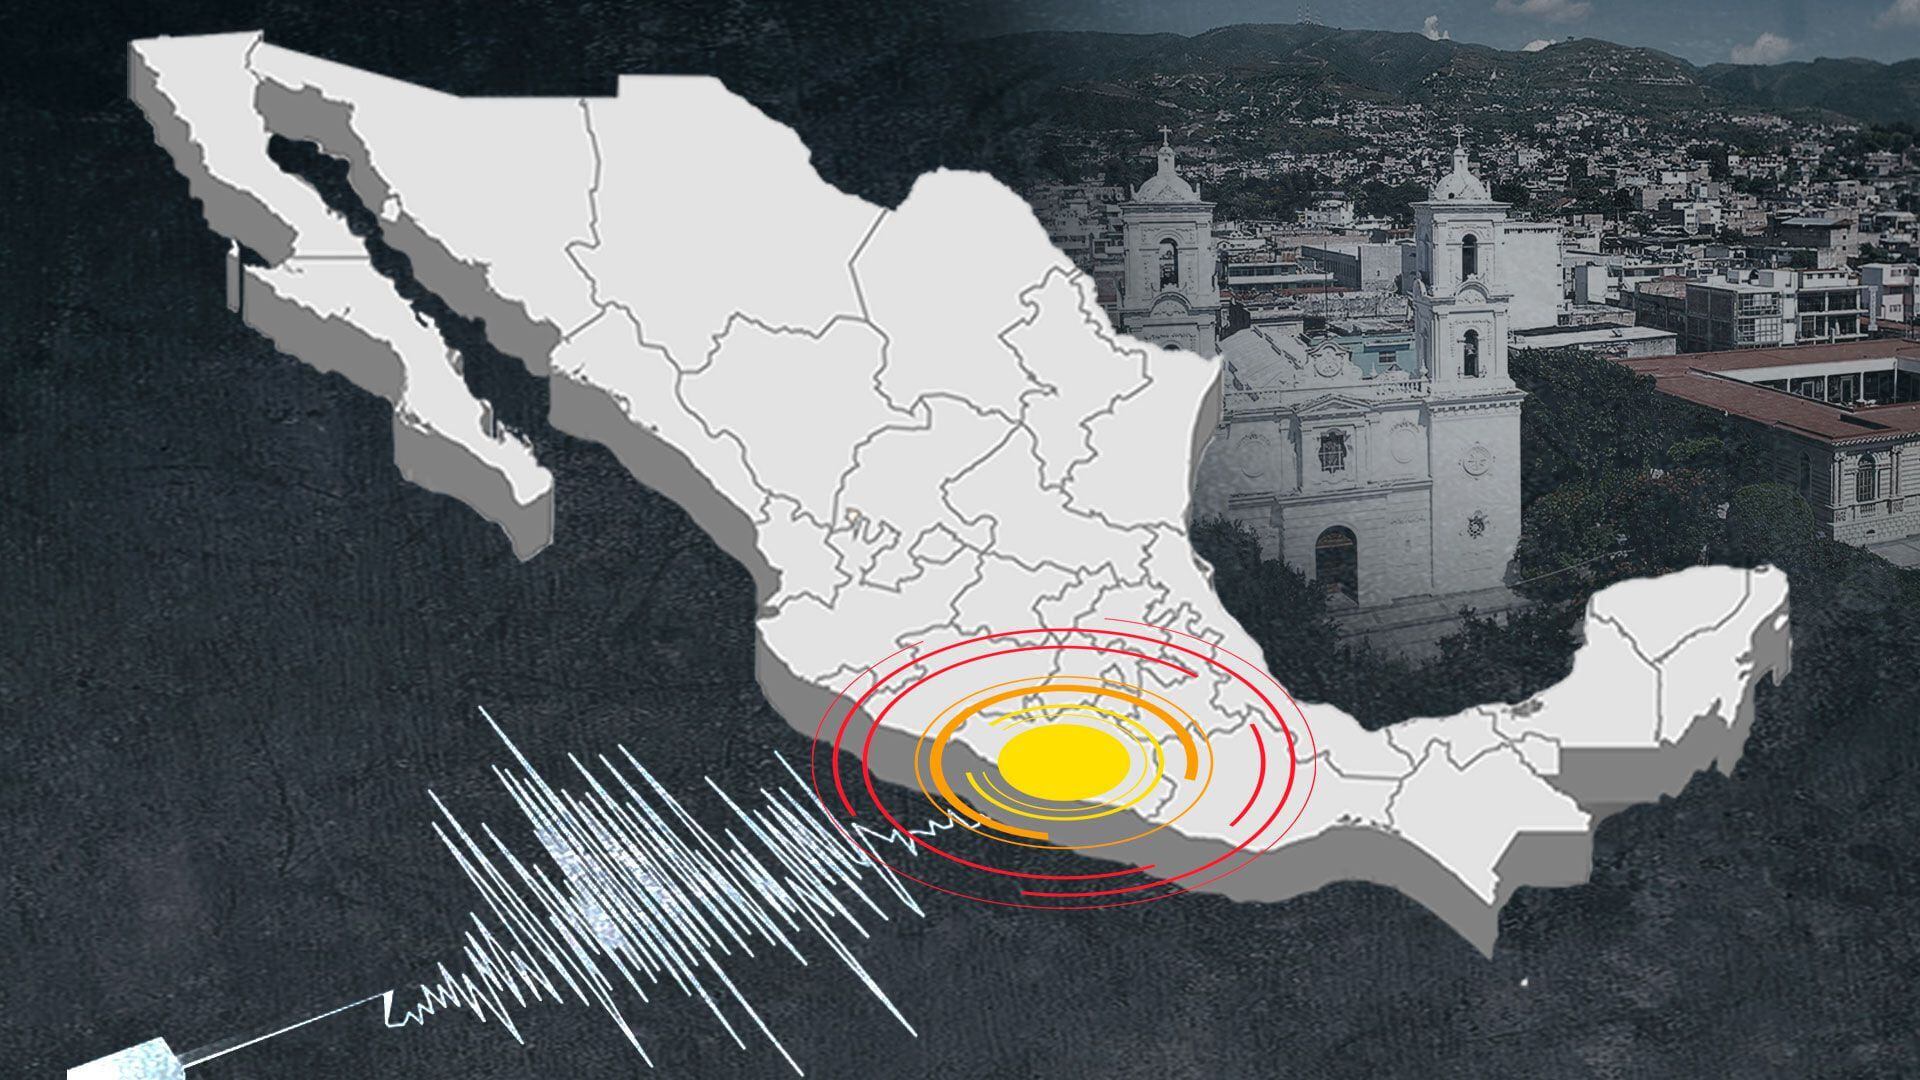 La información preliminar señala que el sismo tuvo epicentro en Salina Cruz. (Infobae)